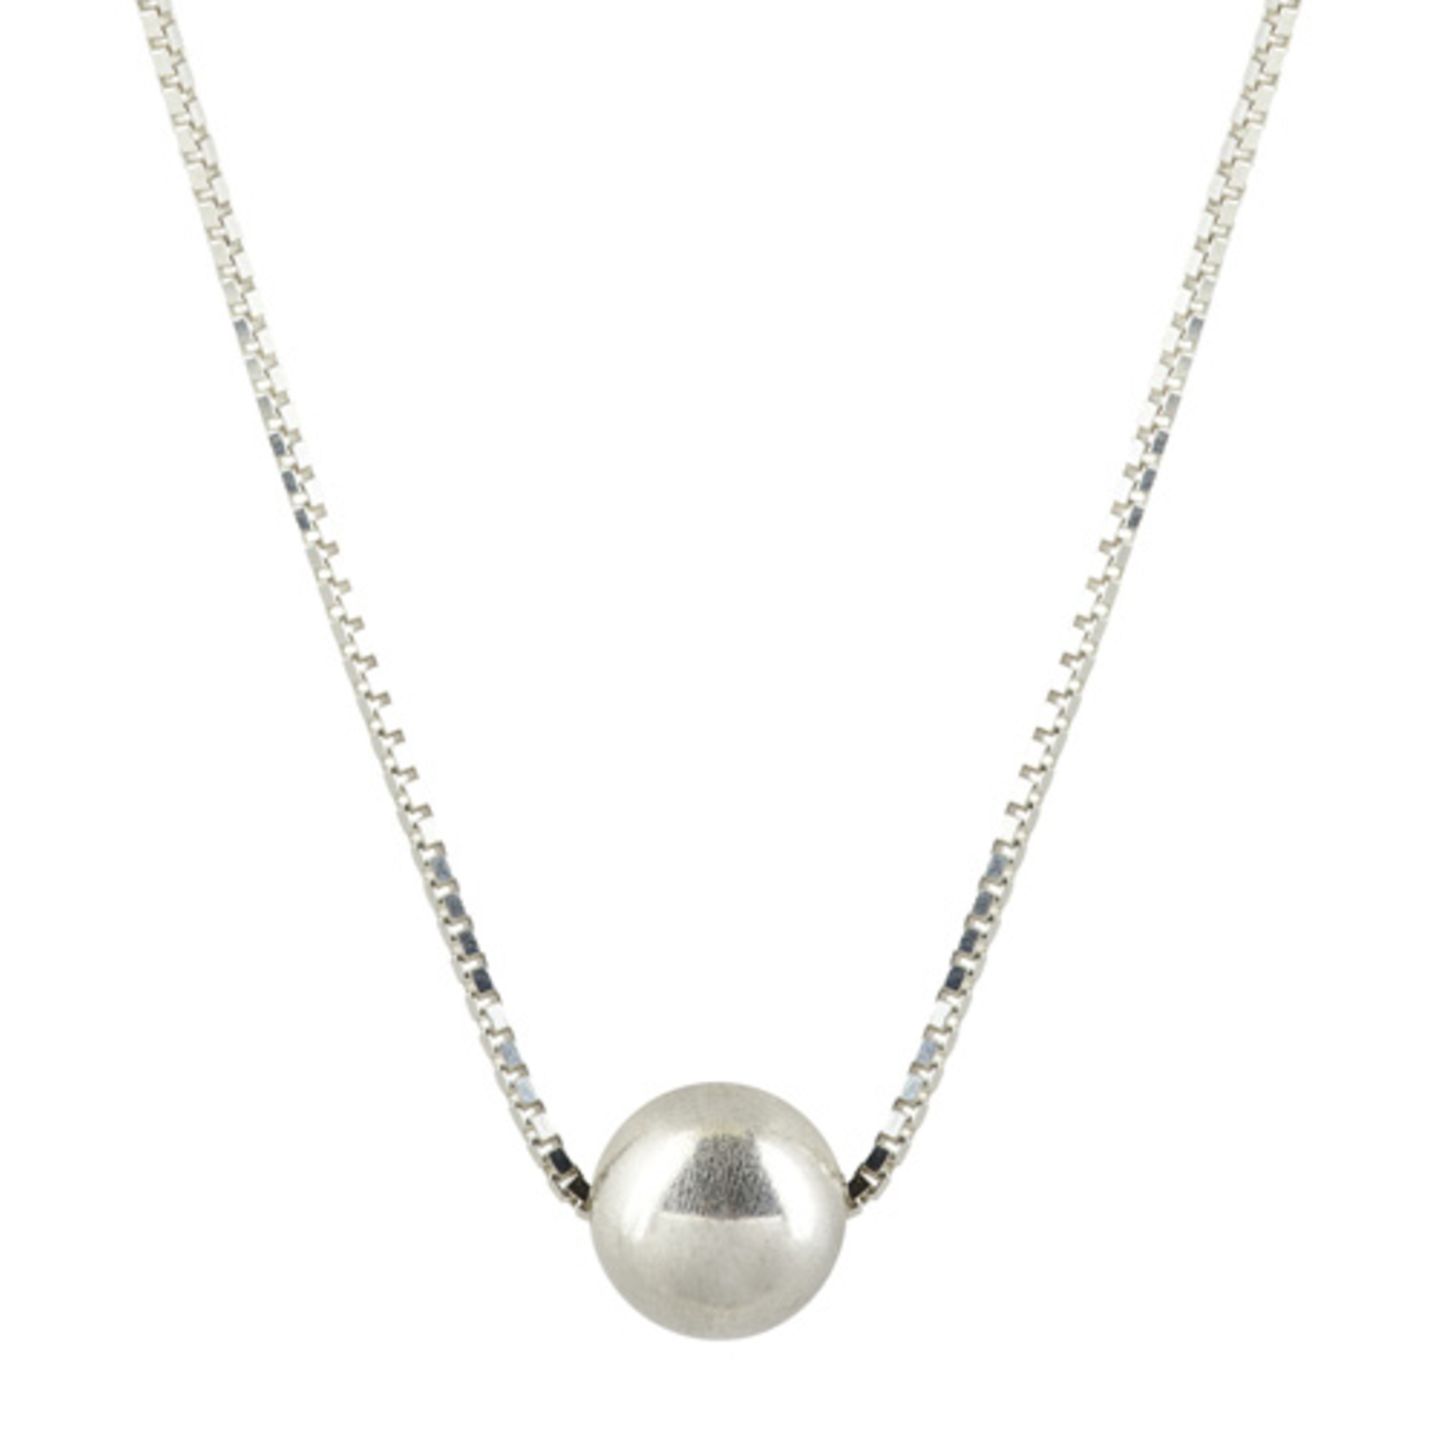 Perle mal anders: Gar nicht konservativ, sondern supercool kommt diese Halskette aus Echtsilber daher. "Rocket Pearl Necklace" von Vera Vega, circa 80 Euro.